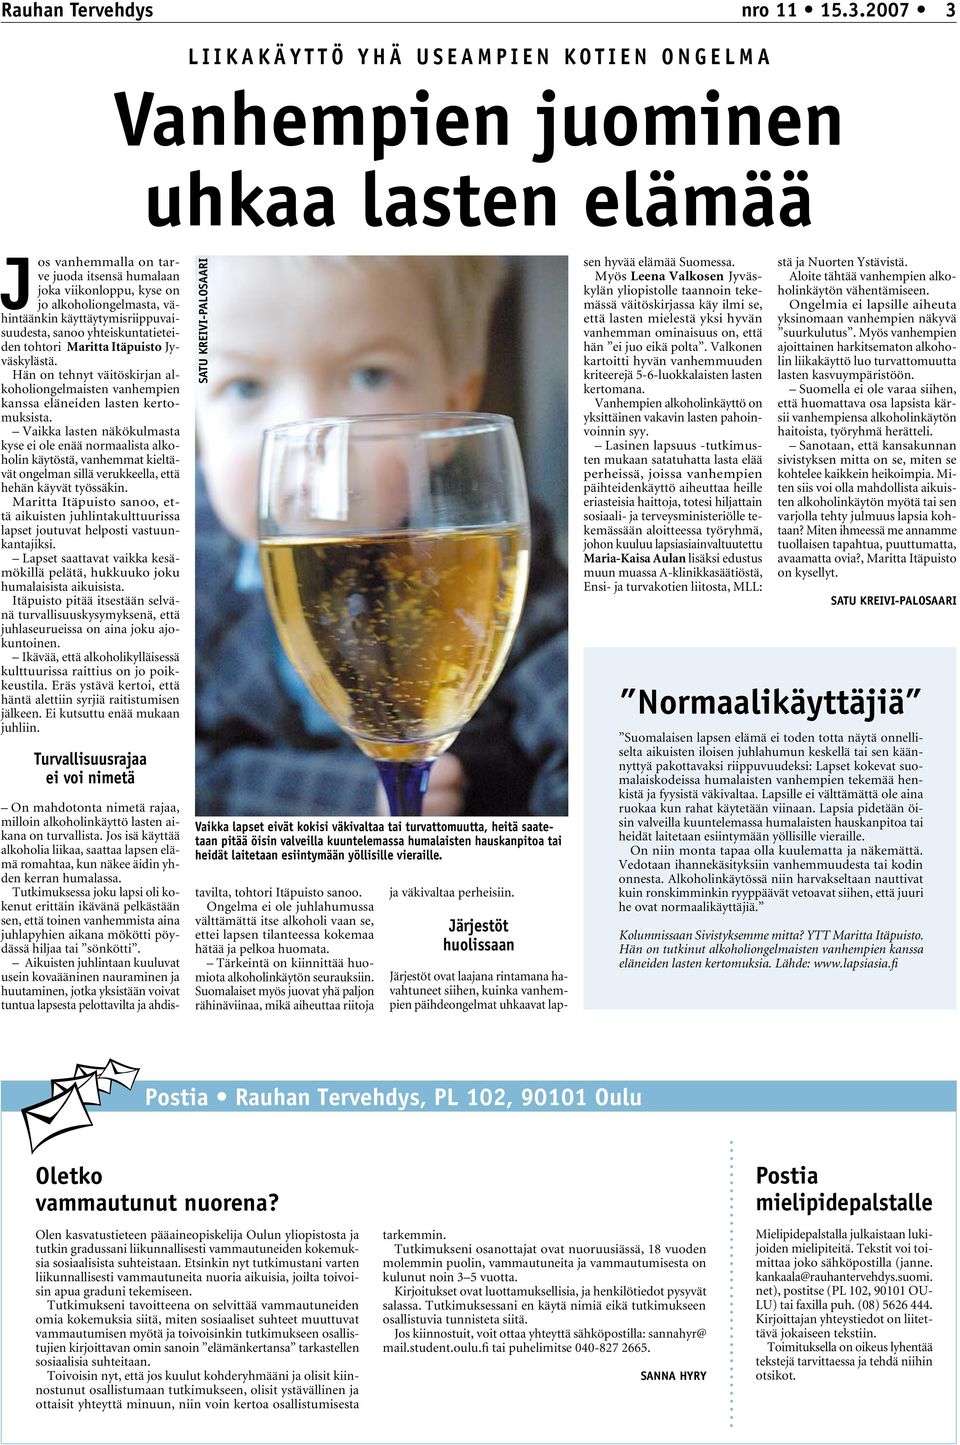 yhteiskuntatieteiden tohtori Maritta Itäpuisto Jyväskylästä. Hän on tehnyt väitöskirjan alkoholiongelmaisten vanhempien kanssa eläneiden lasten kertomuksista.